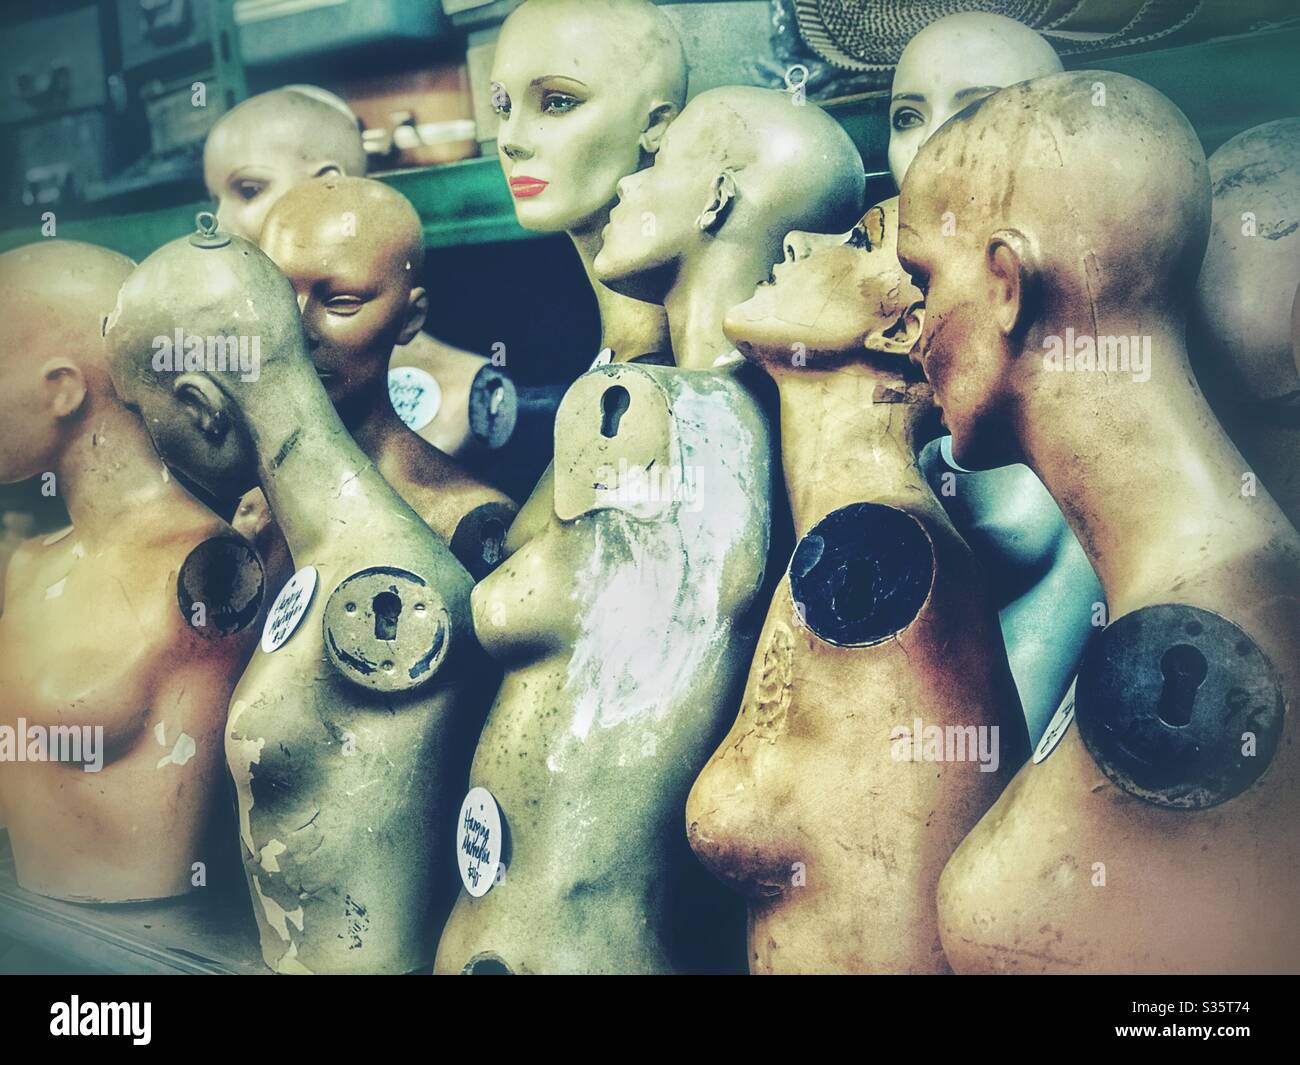 Los cuerpos superiores femeninos del maniquí alineados en un almacén de salvamento Foto de stock